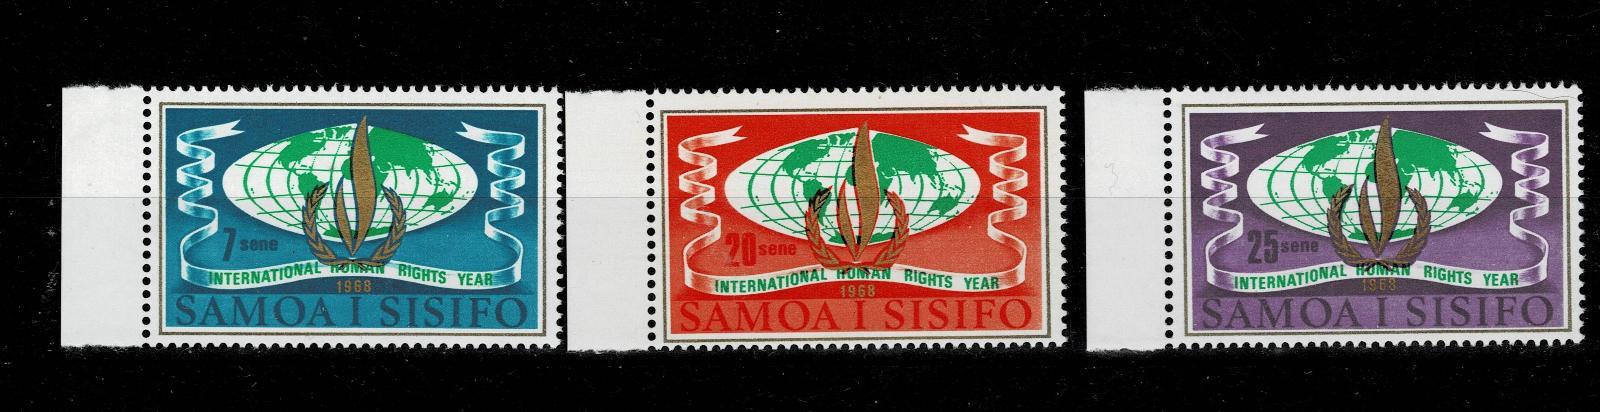 Samoa i Sisifo 1968  - Mi 182/4** - Nr. 2  - Filatelie